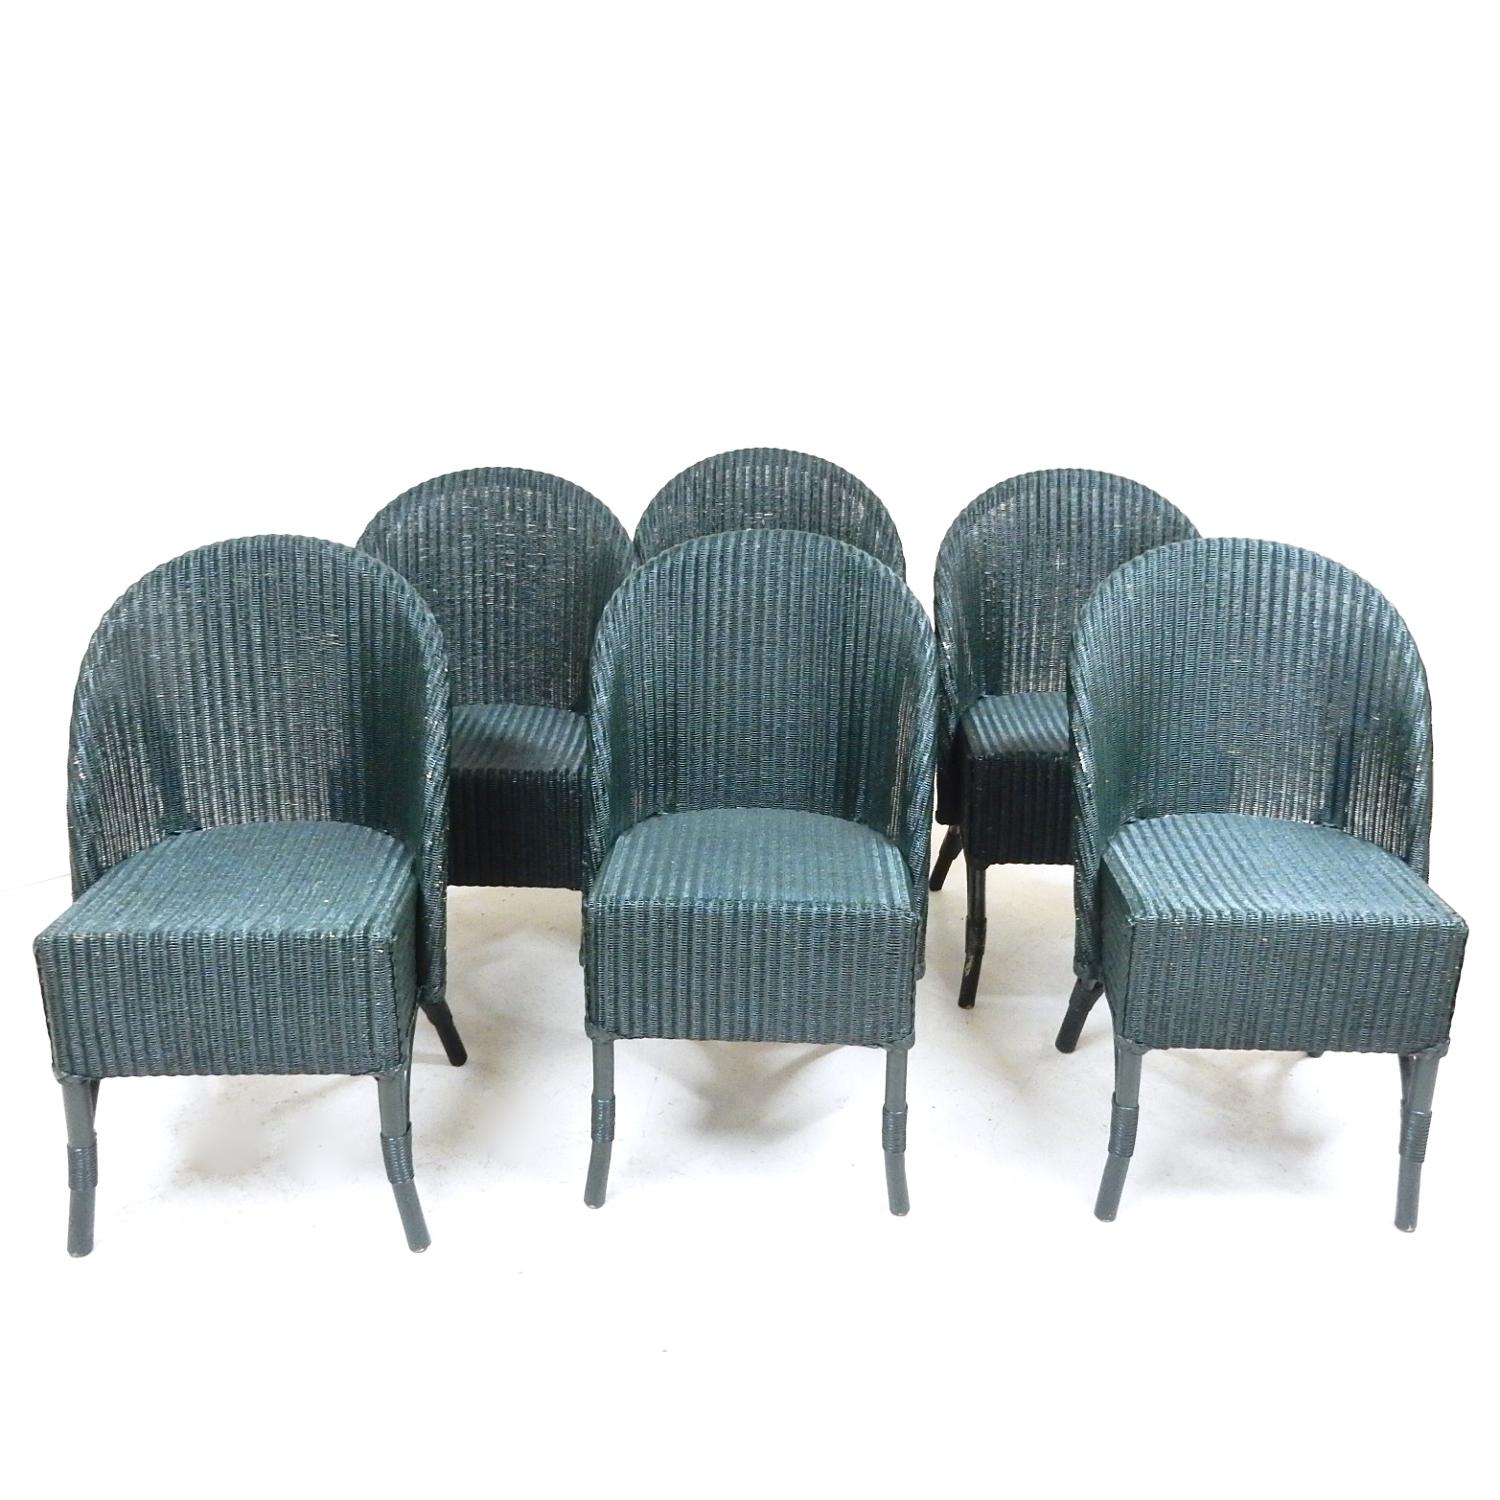 Lloyd Loom Chairs